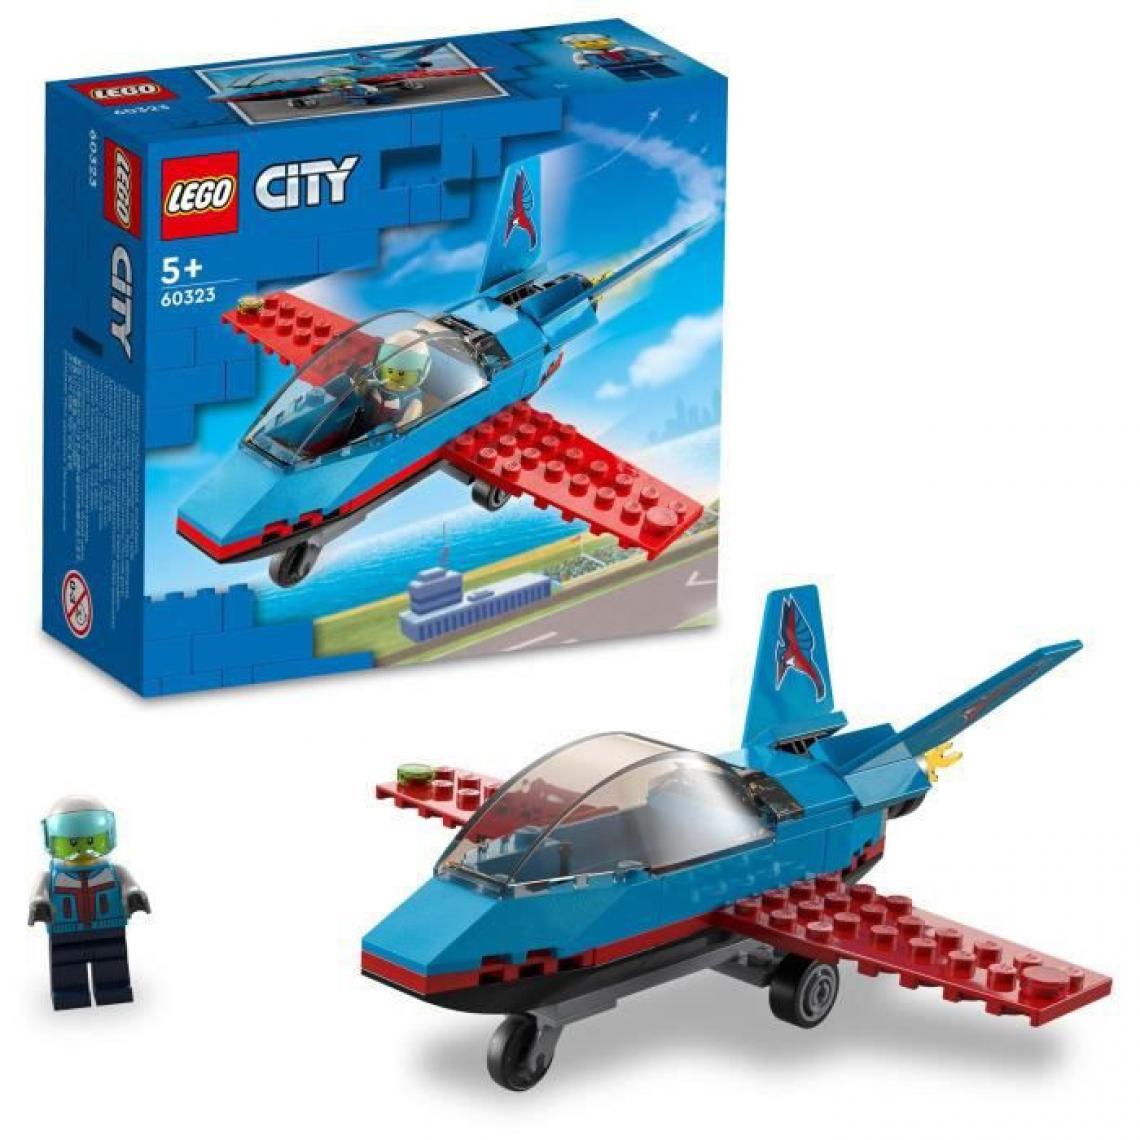 Lego - LEGO 60323 City Great Vehicles L'Avion de Voltige, Idées de Cadeau Jouet pour Enfants des 5 Ans avec Minifigure Pilote - Briques Lego